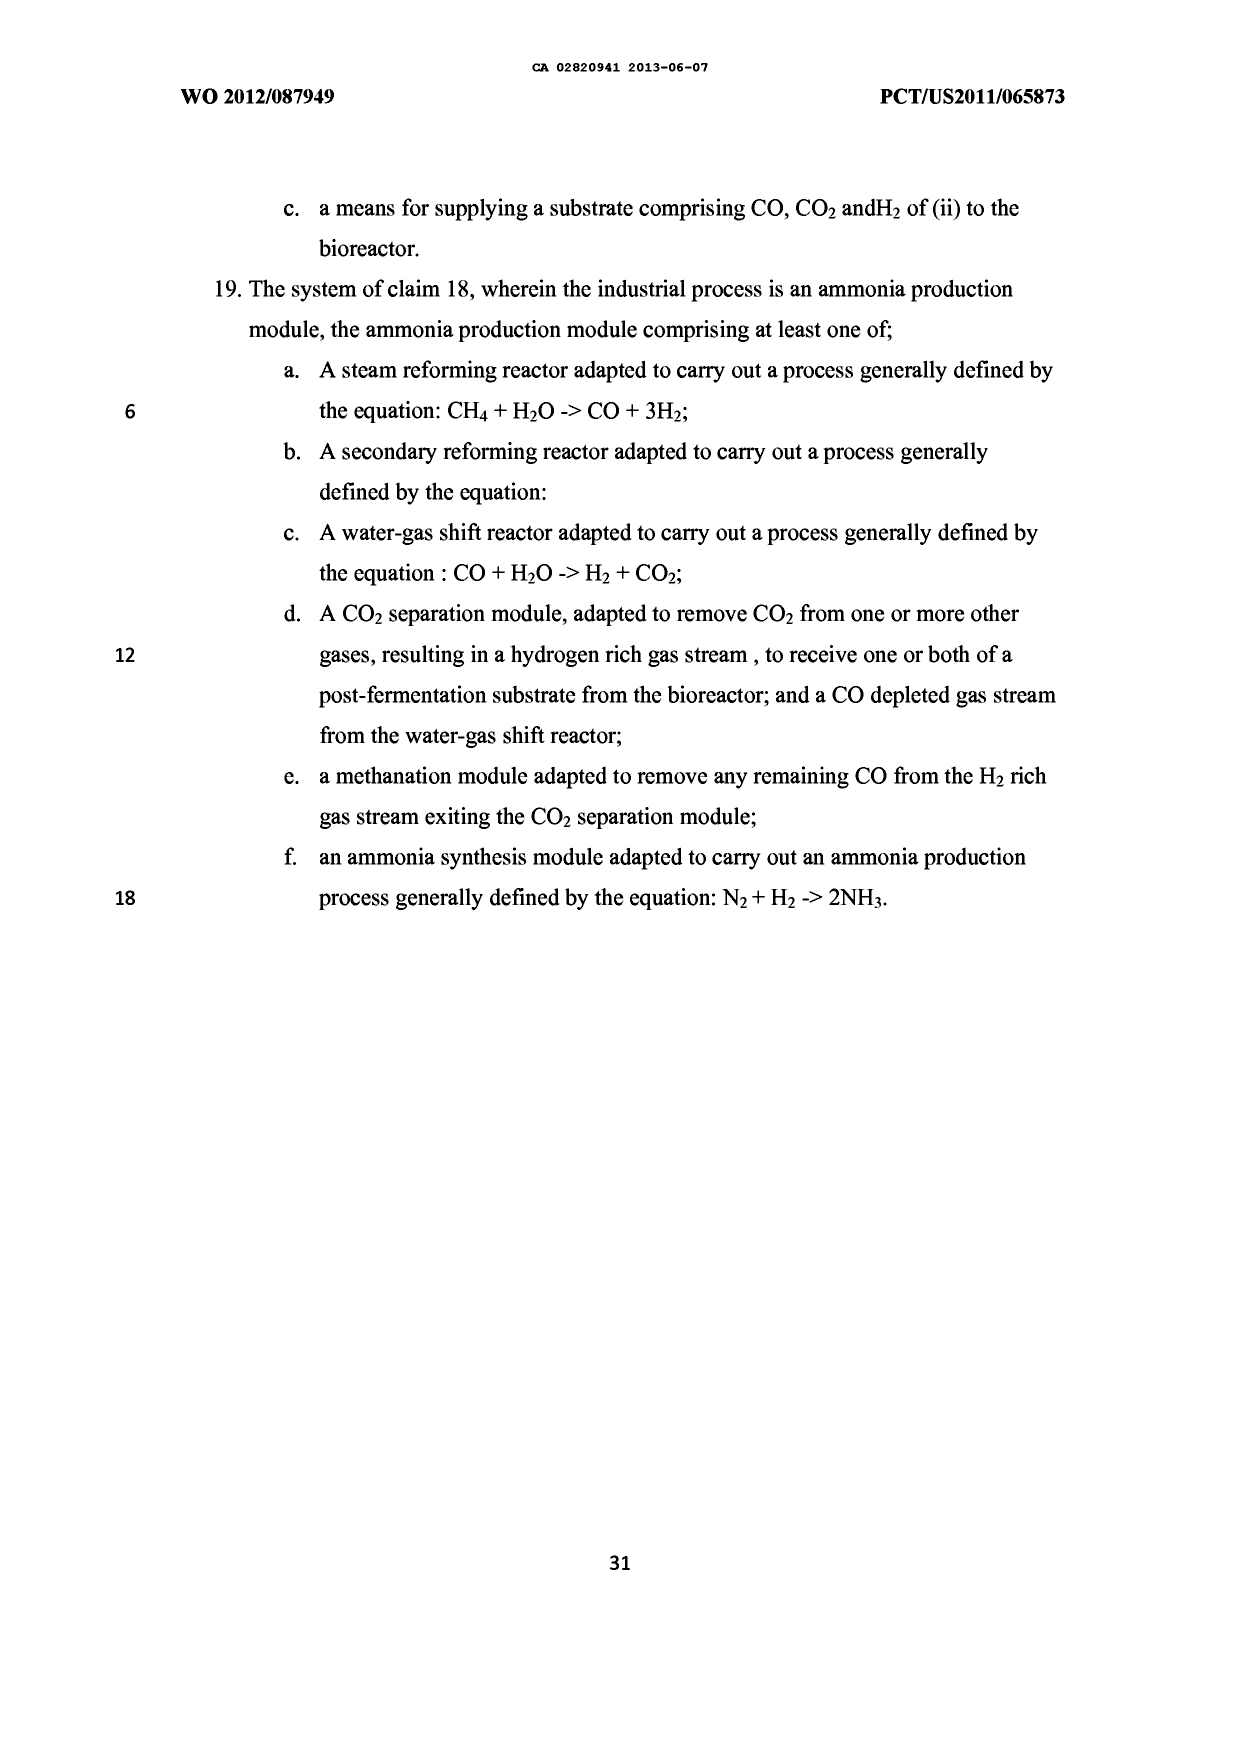 Document de brevet canadien 2820941. Revendications 20130607. Image 3 de 3